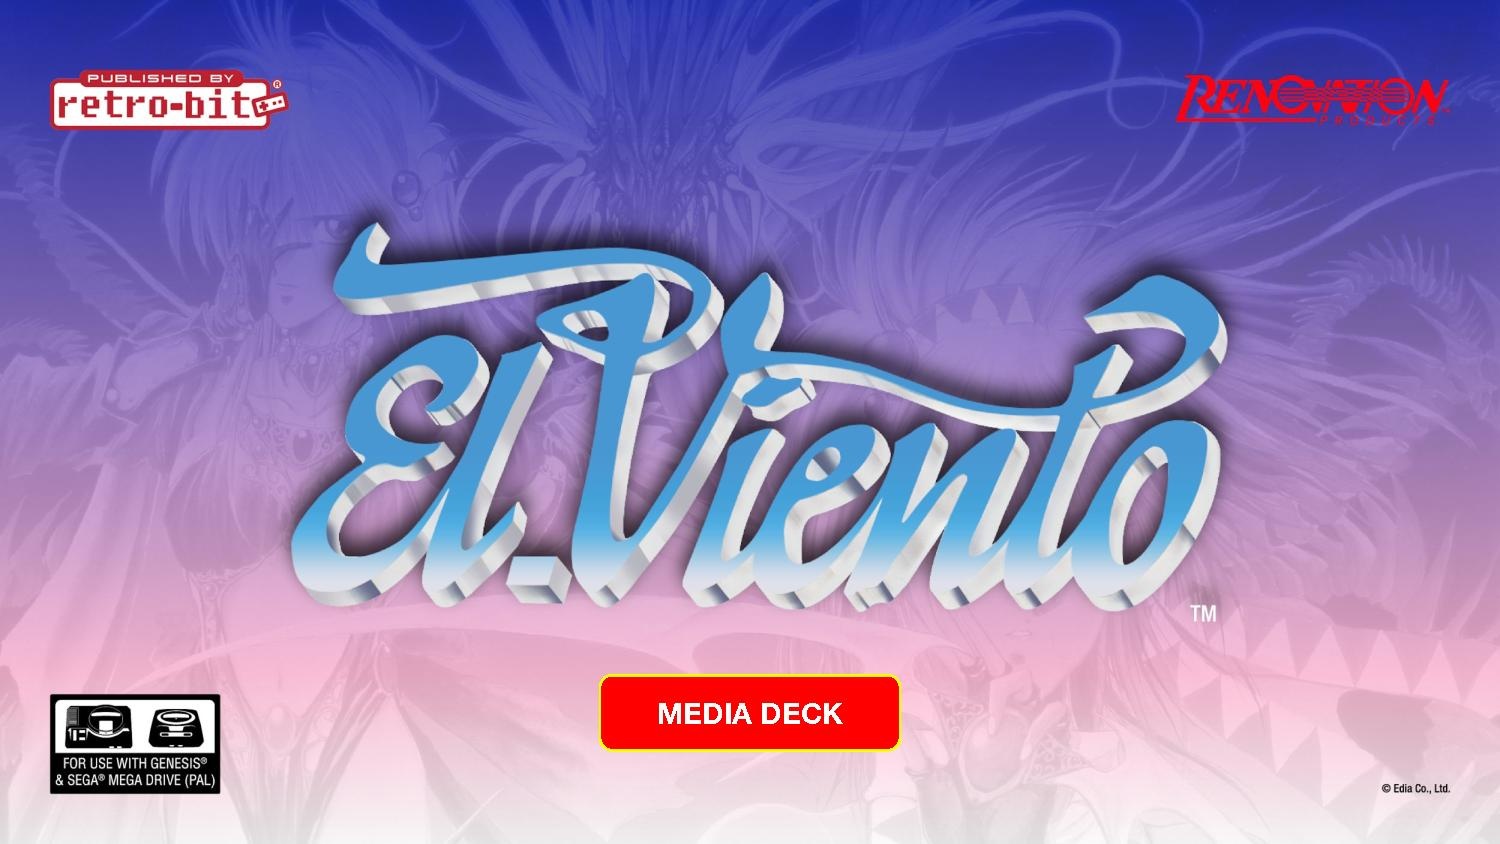 ElVientoPressKit Retro-Bit Publishing - El Viento - Media Deck.pdf